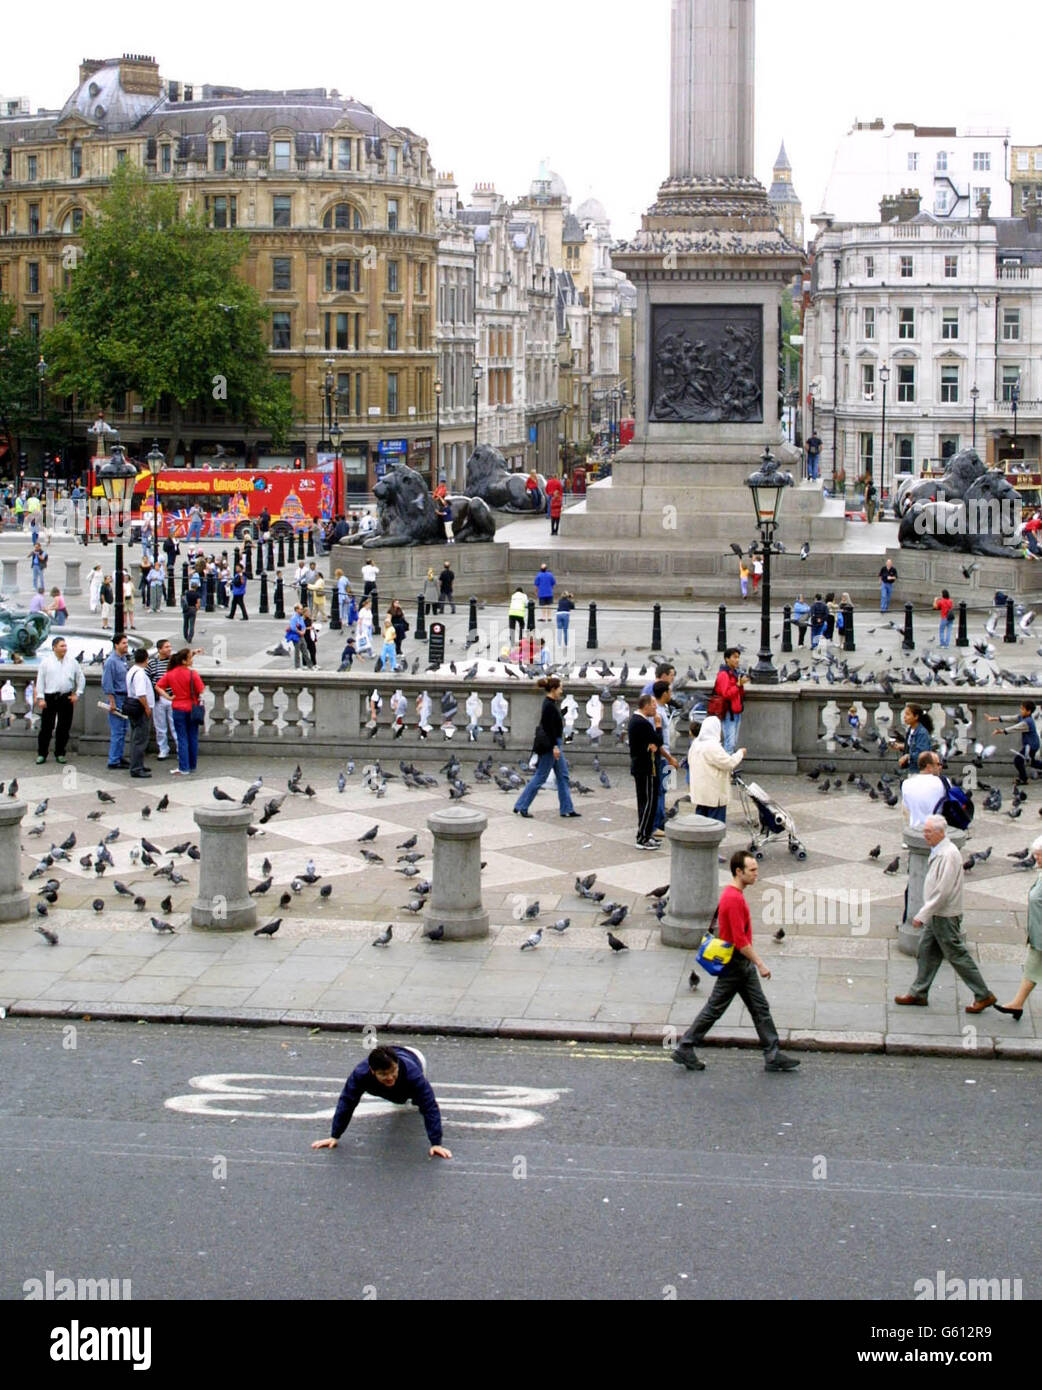 Un touriste en profite car le côté nord de Trafalgar Square est fermé à la circulation pour tenter de rendre le célèbre monument de Londres plus convivial pour les piétons. Banque D'Images